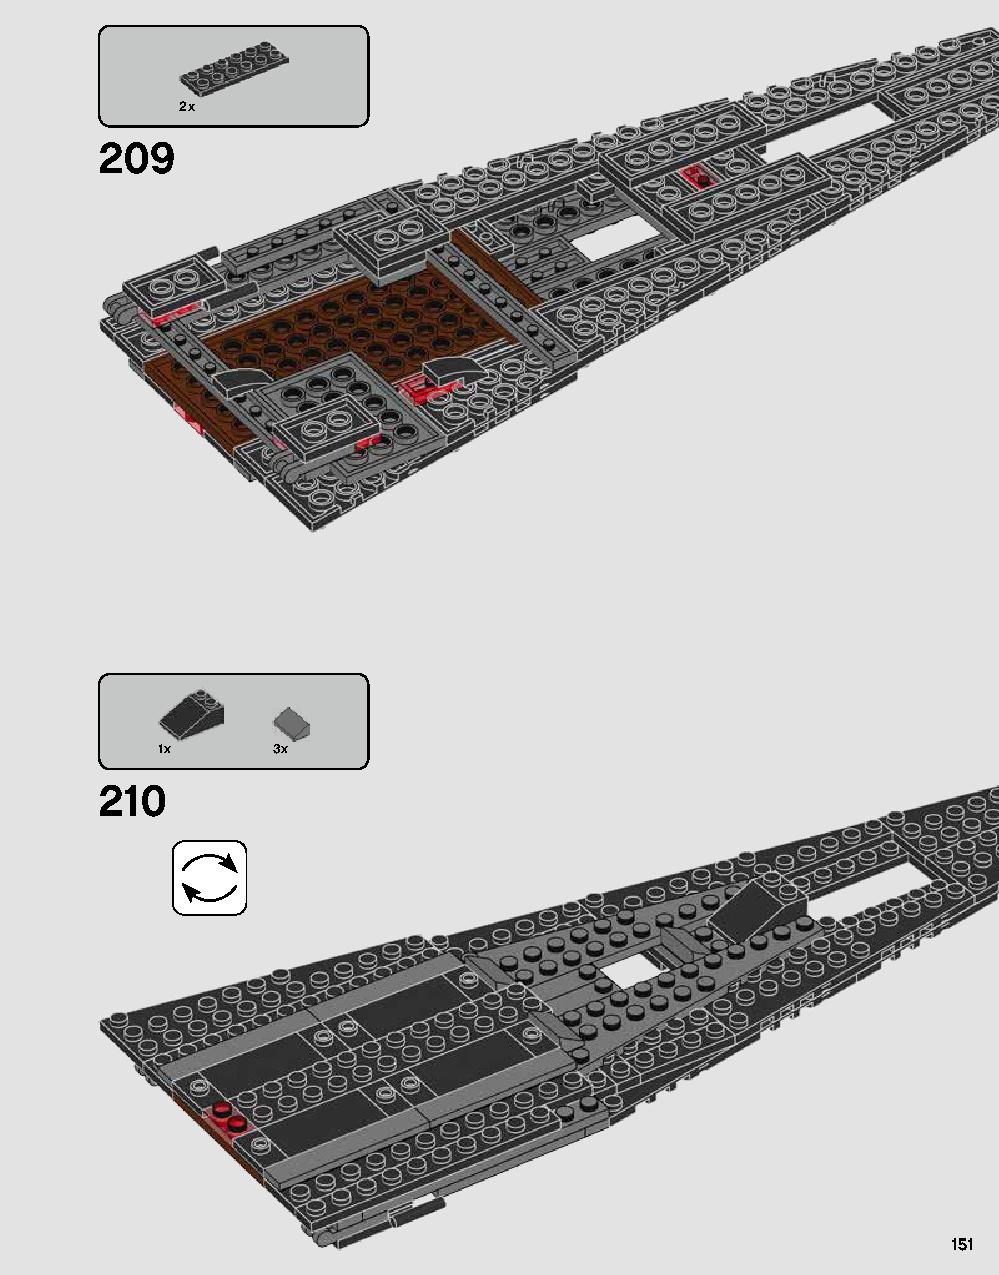 ダース・ベイダーの城 75251 レゴの商品情報 レゴの説明書・組立方法 151 page